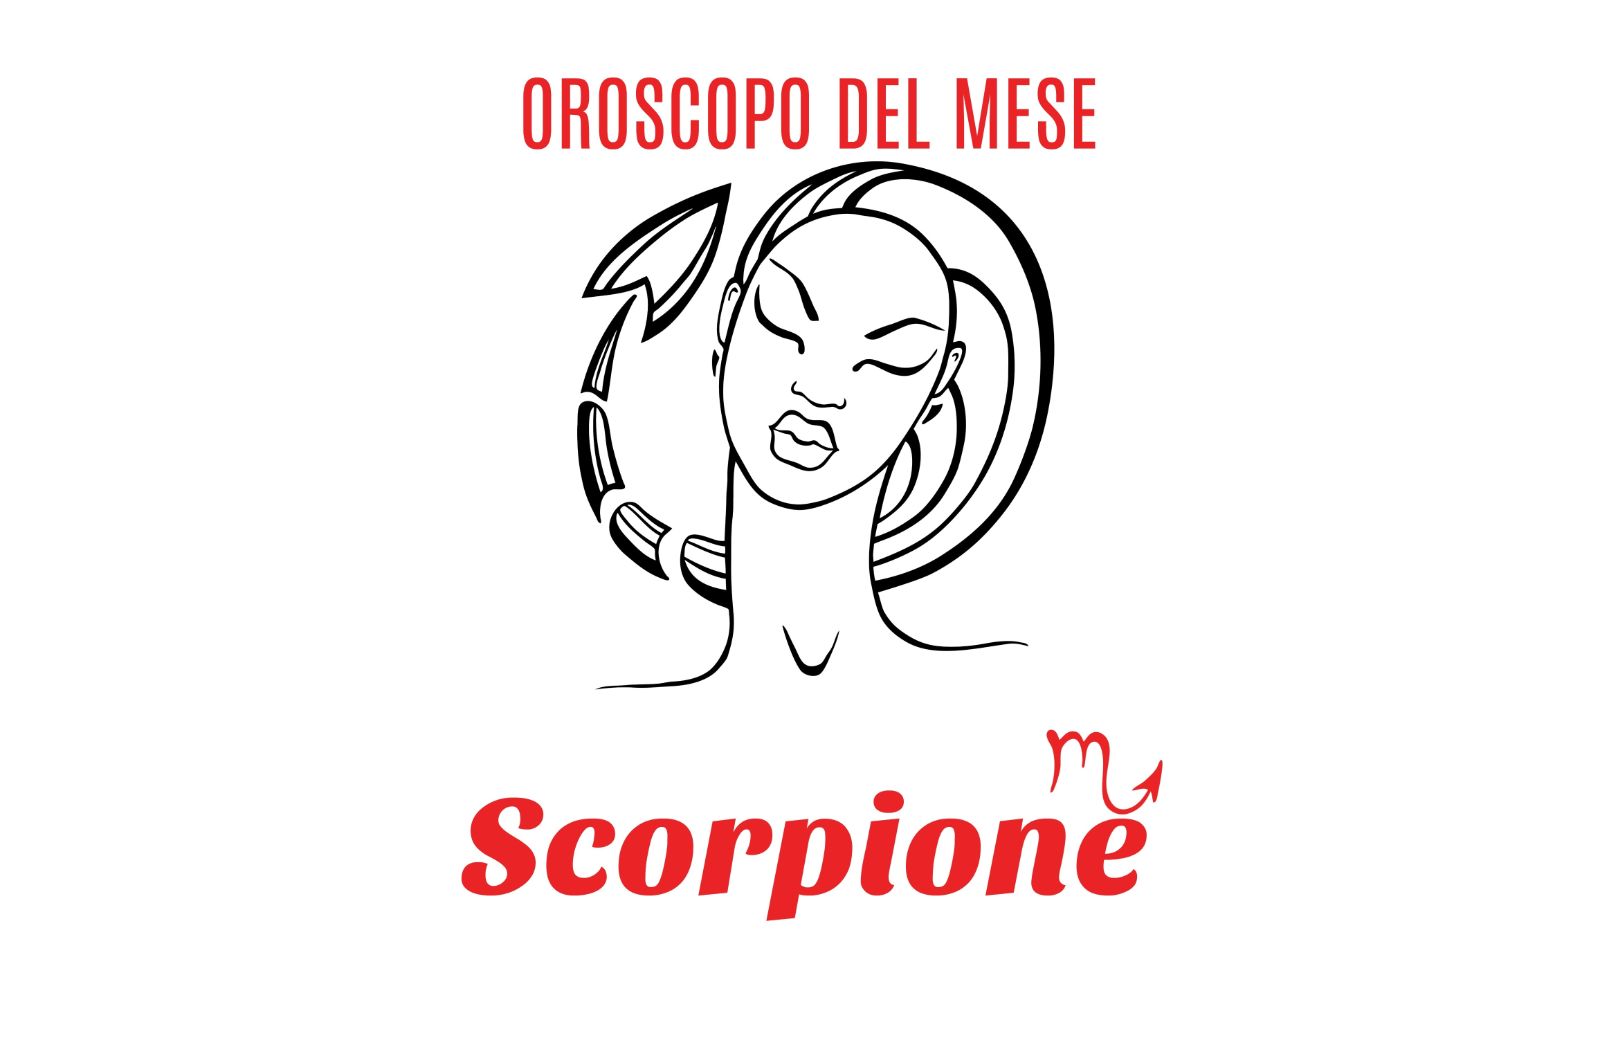 Oroscopo del mese: Scorpione - marzo 2019